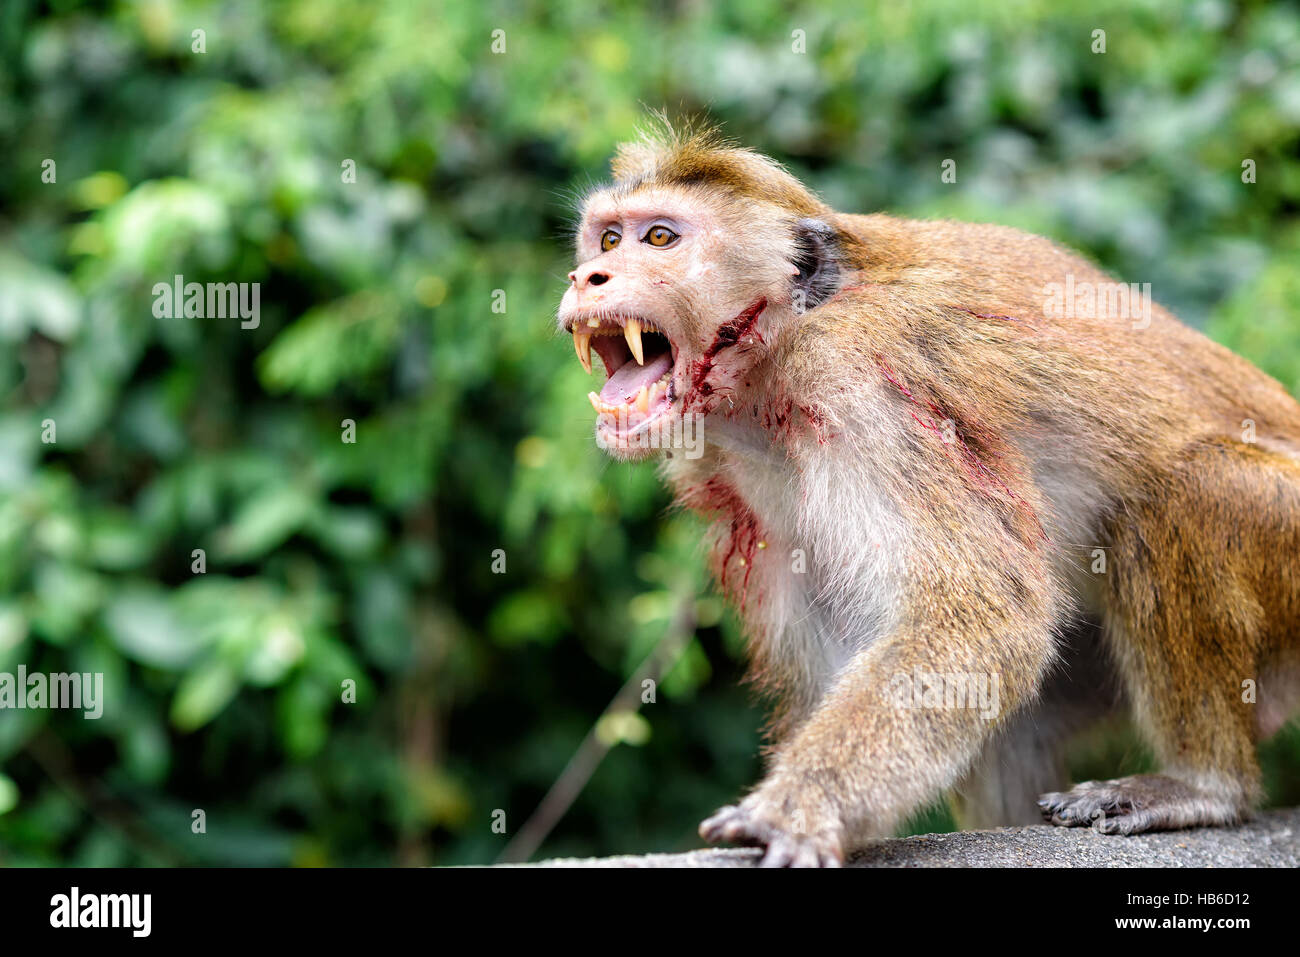 bonnet monkey Stock Photo